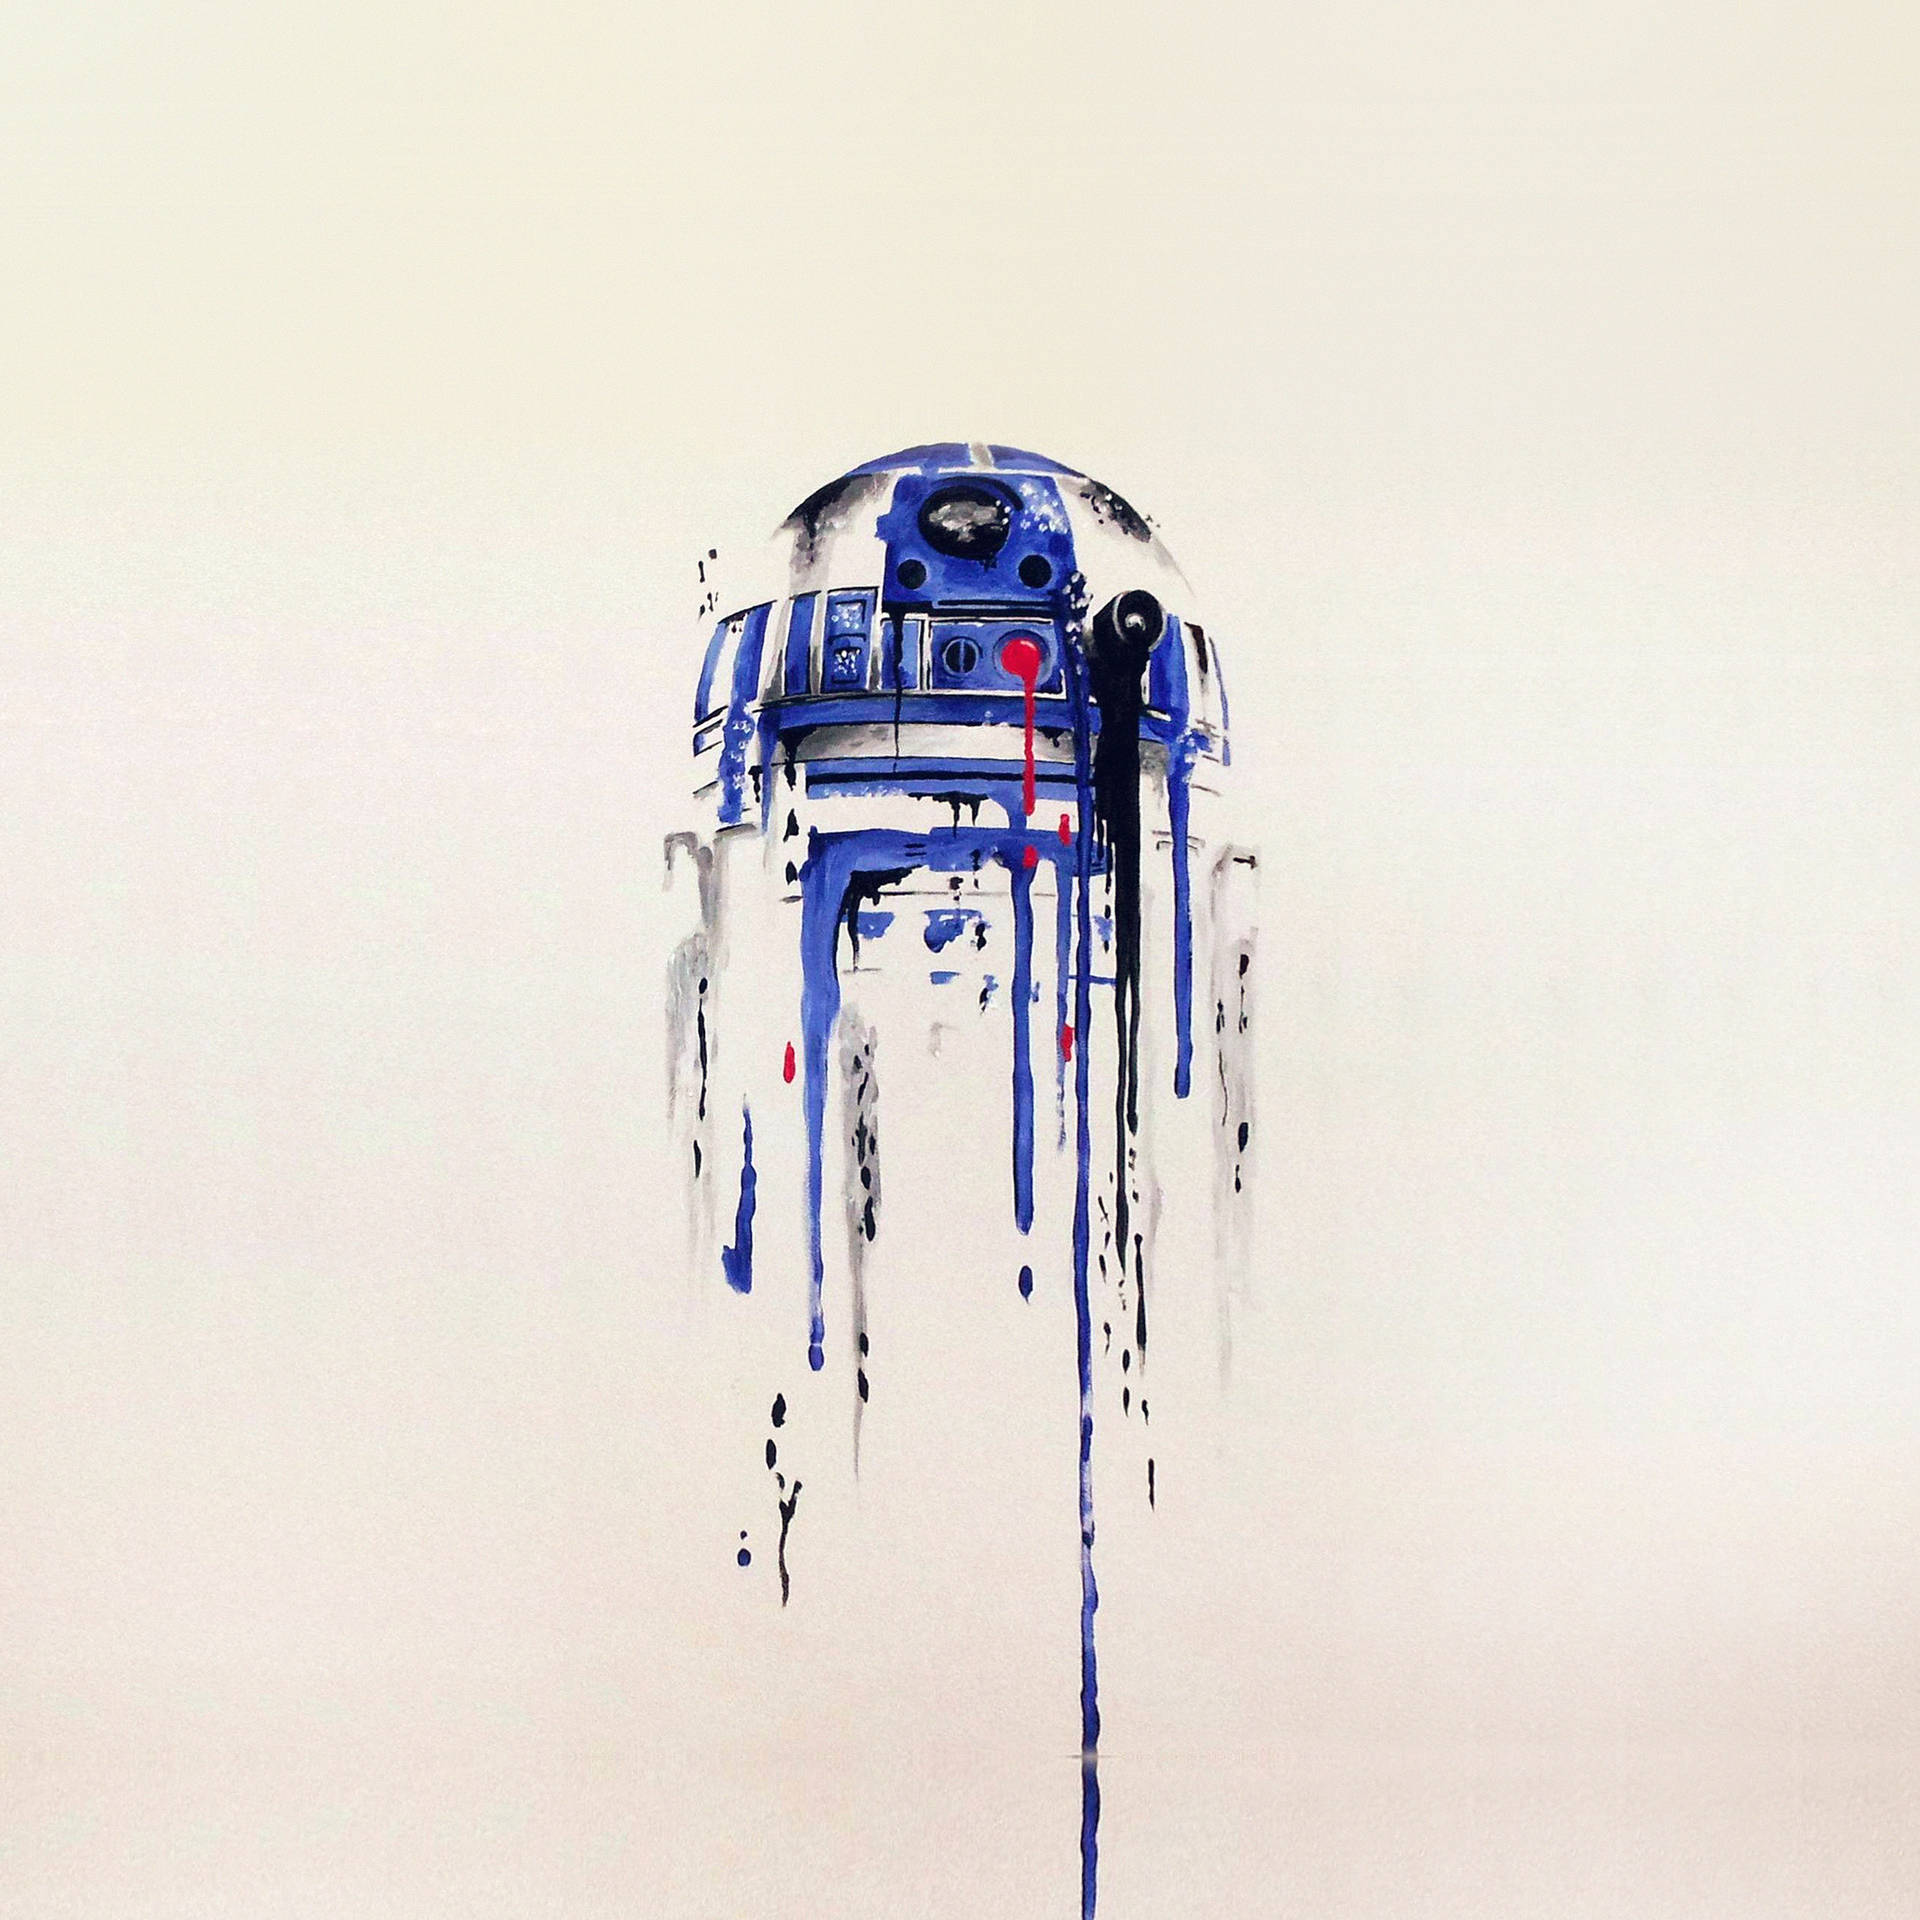 Star Wars Ipad R2-d2 Artwork Wallpaper